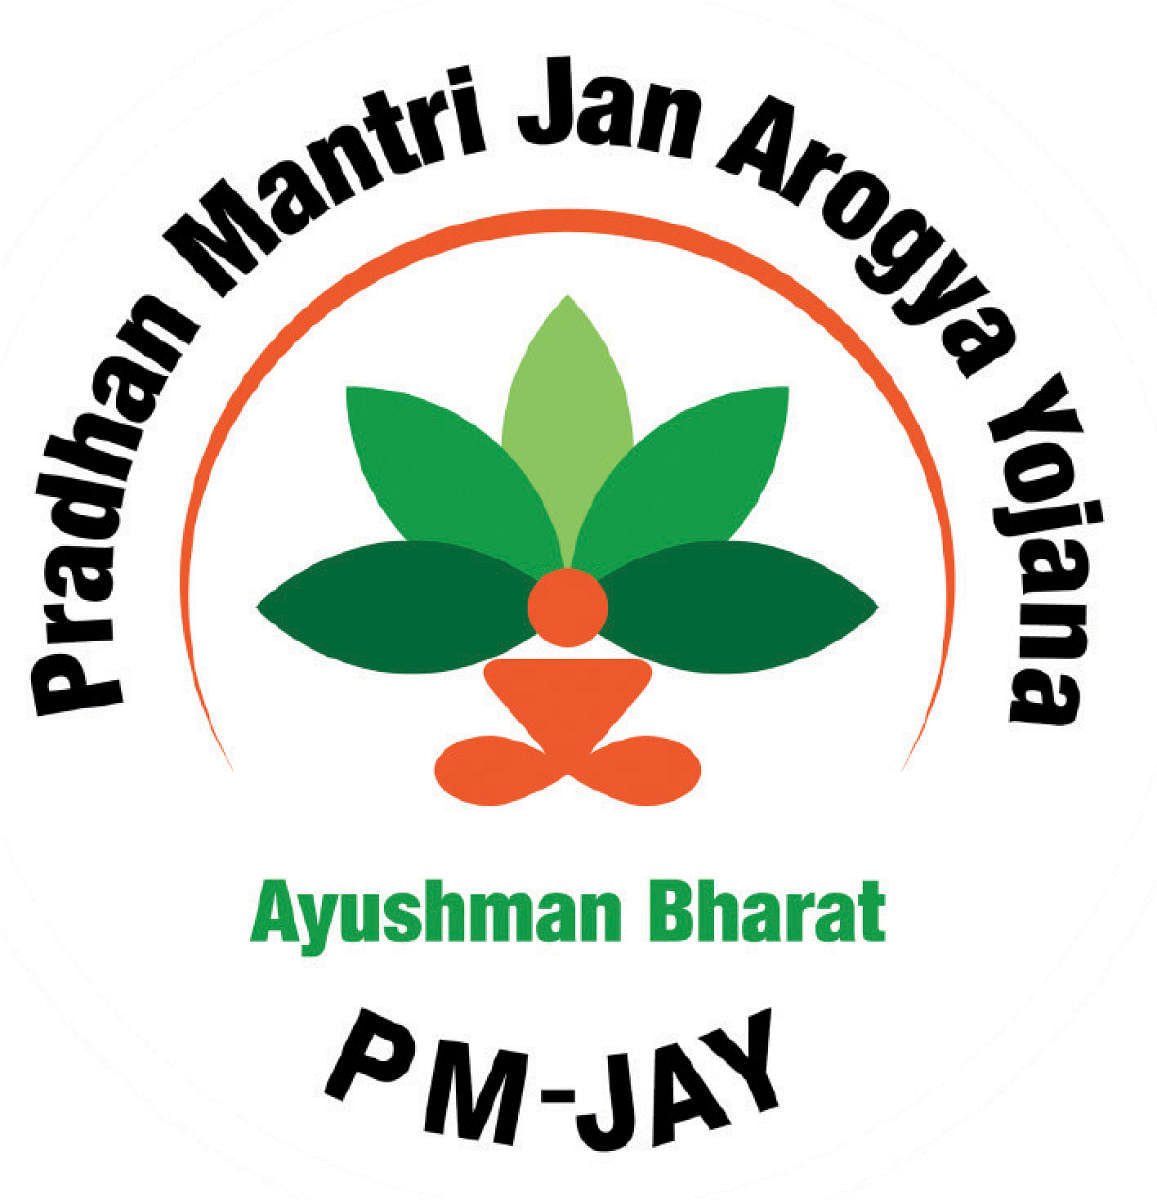 Ayushman Bharat (Pradhan Mantri Jan Arogya Yojana)